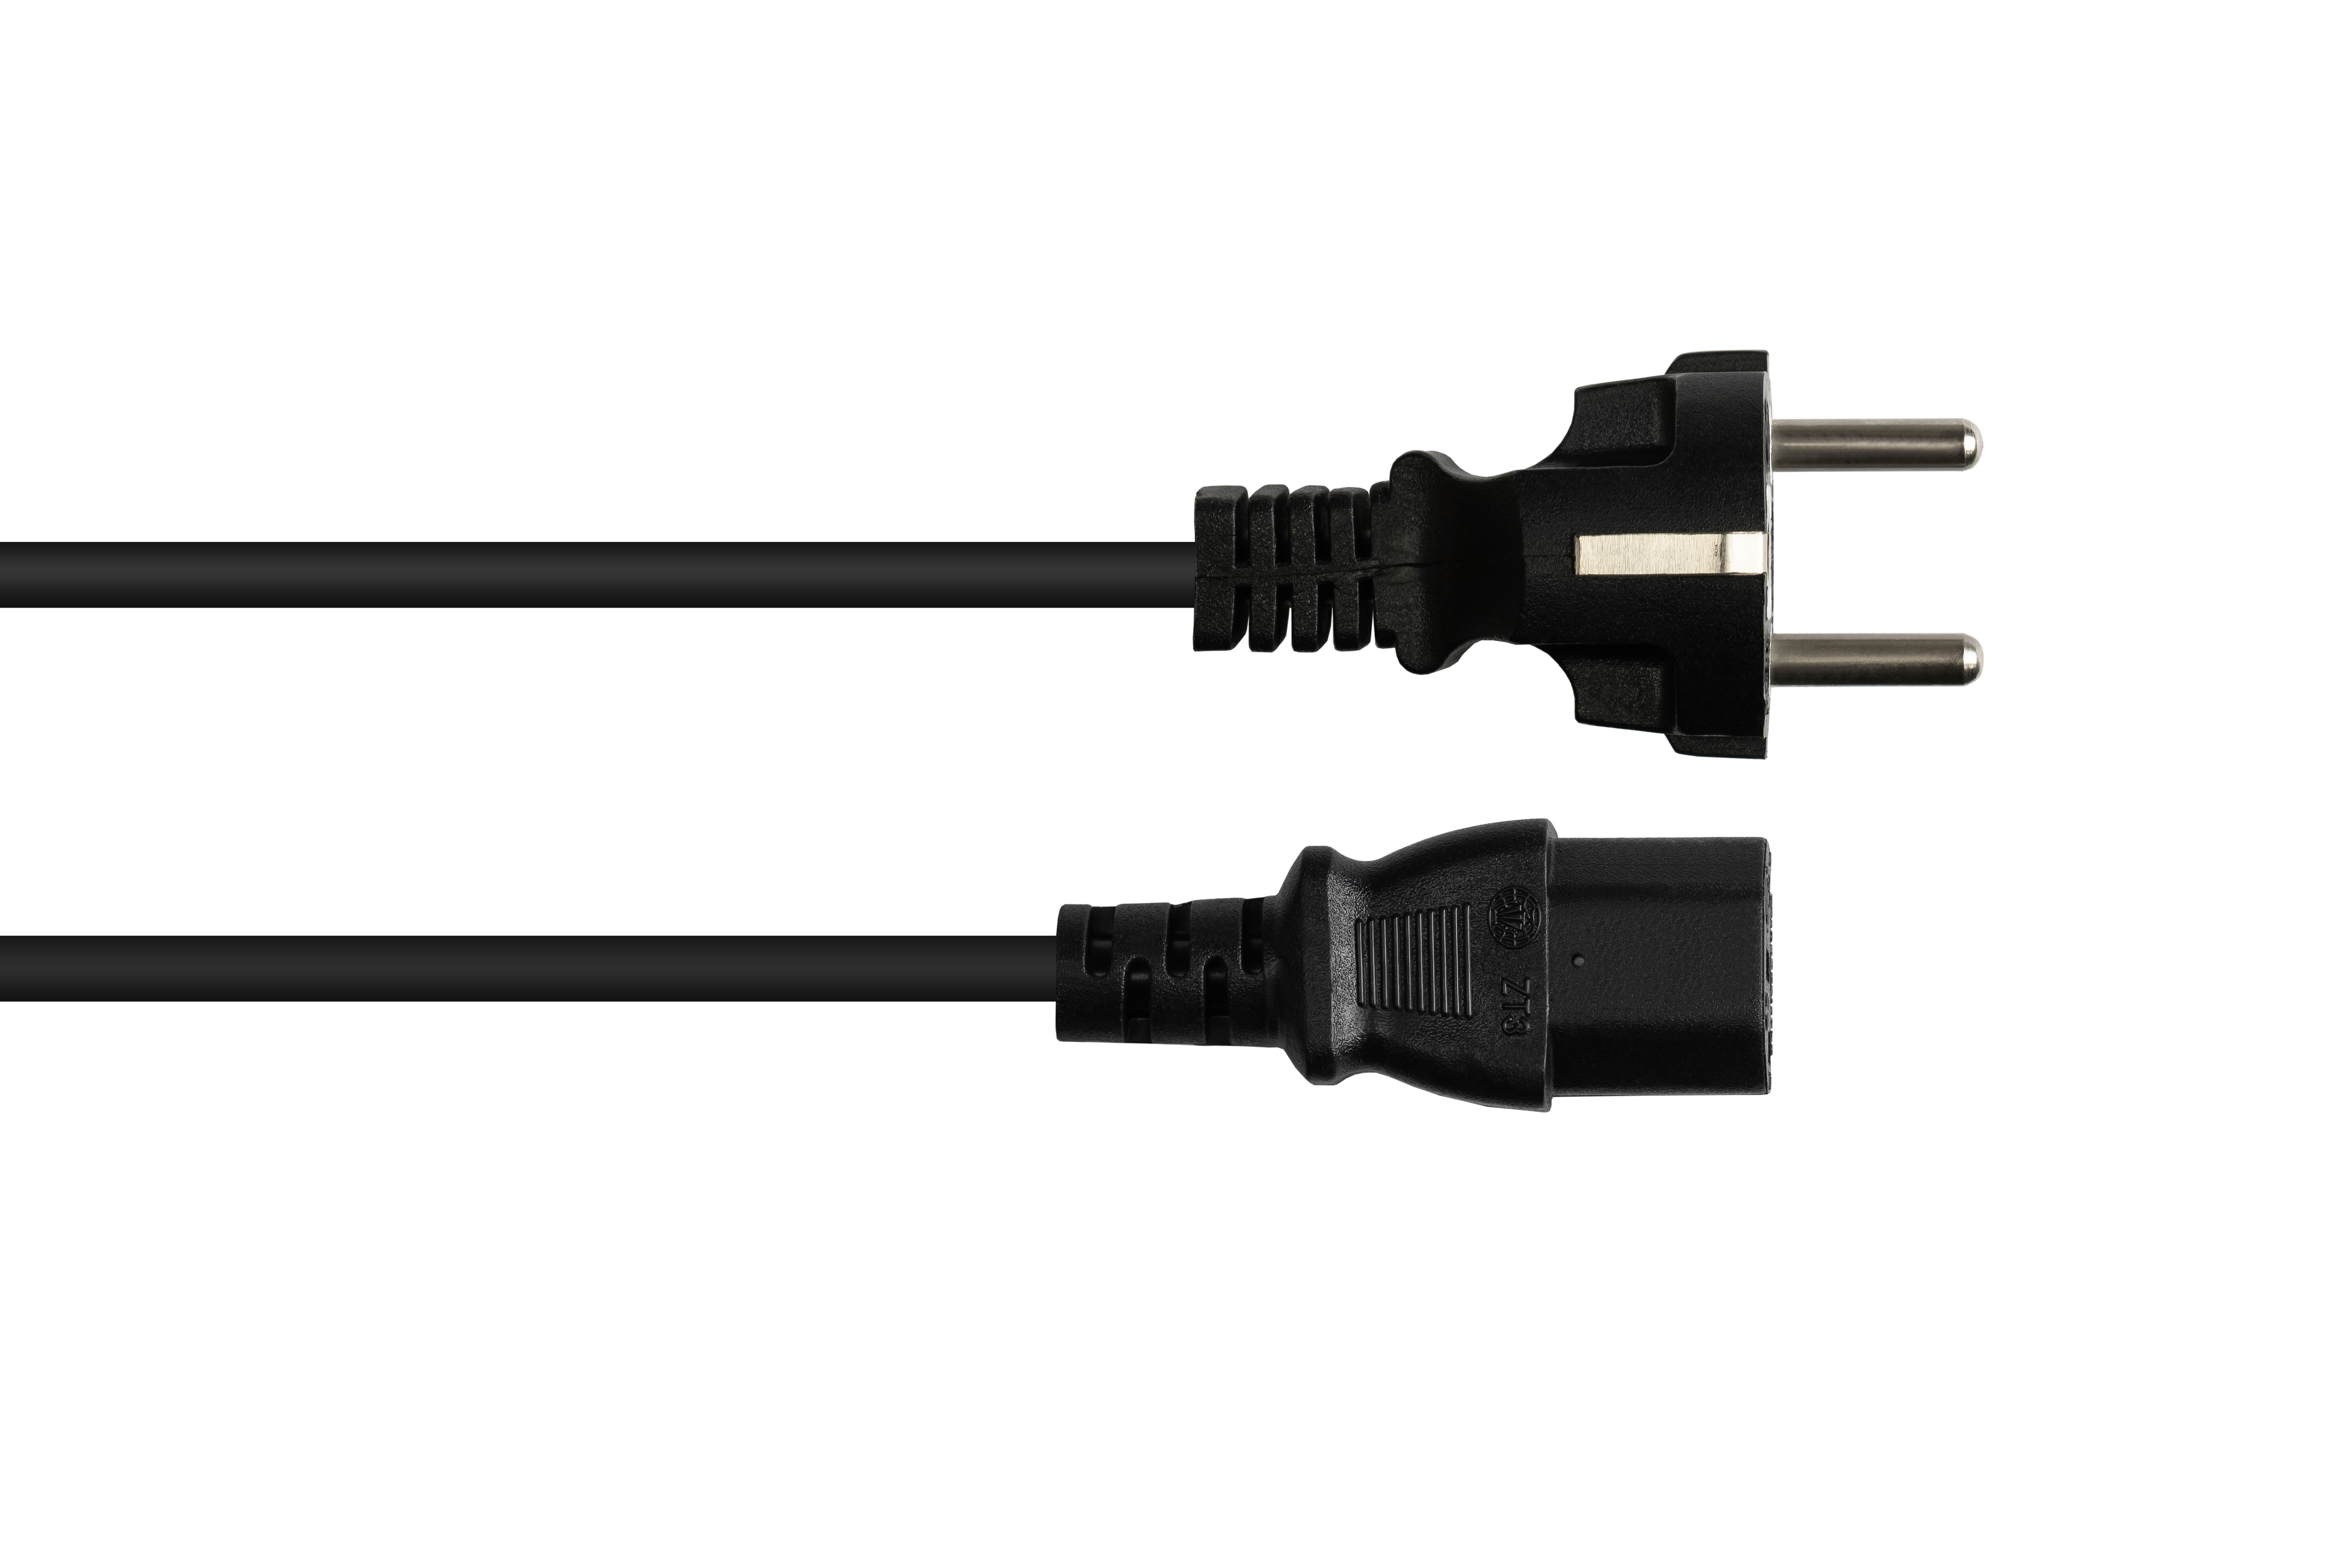 GOOD CONNECTIONS Schutzkontakt-Stecker Typ E+F 7/7, mm² schwarz, (CEE C13 (gerade), Stromkabel, gerade) an schwarz 0,75